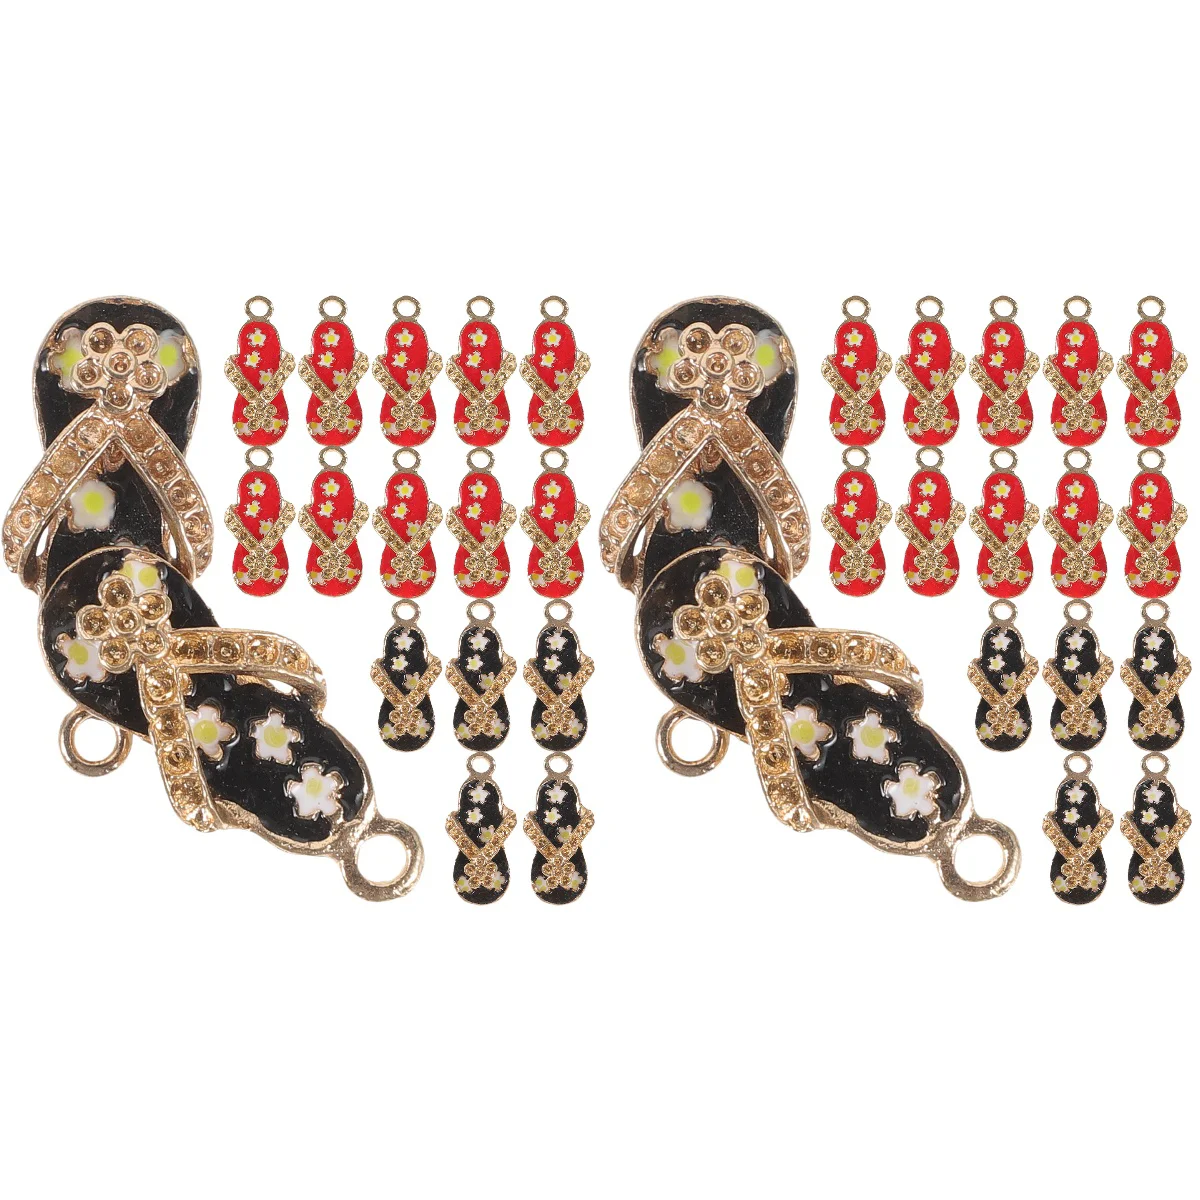 

40 Pcs Summer Crafts Slipper Pendant Ornaments Charm Accessories 2.5x1cm Adorable Necklace Pendants Decors DIY Metal Charms